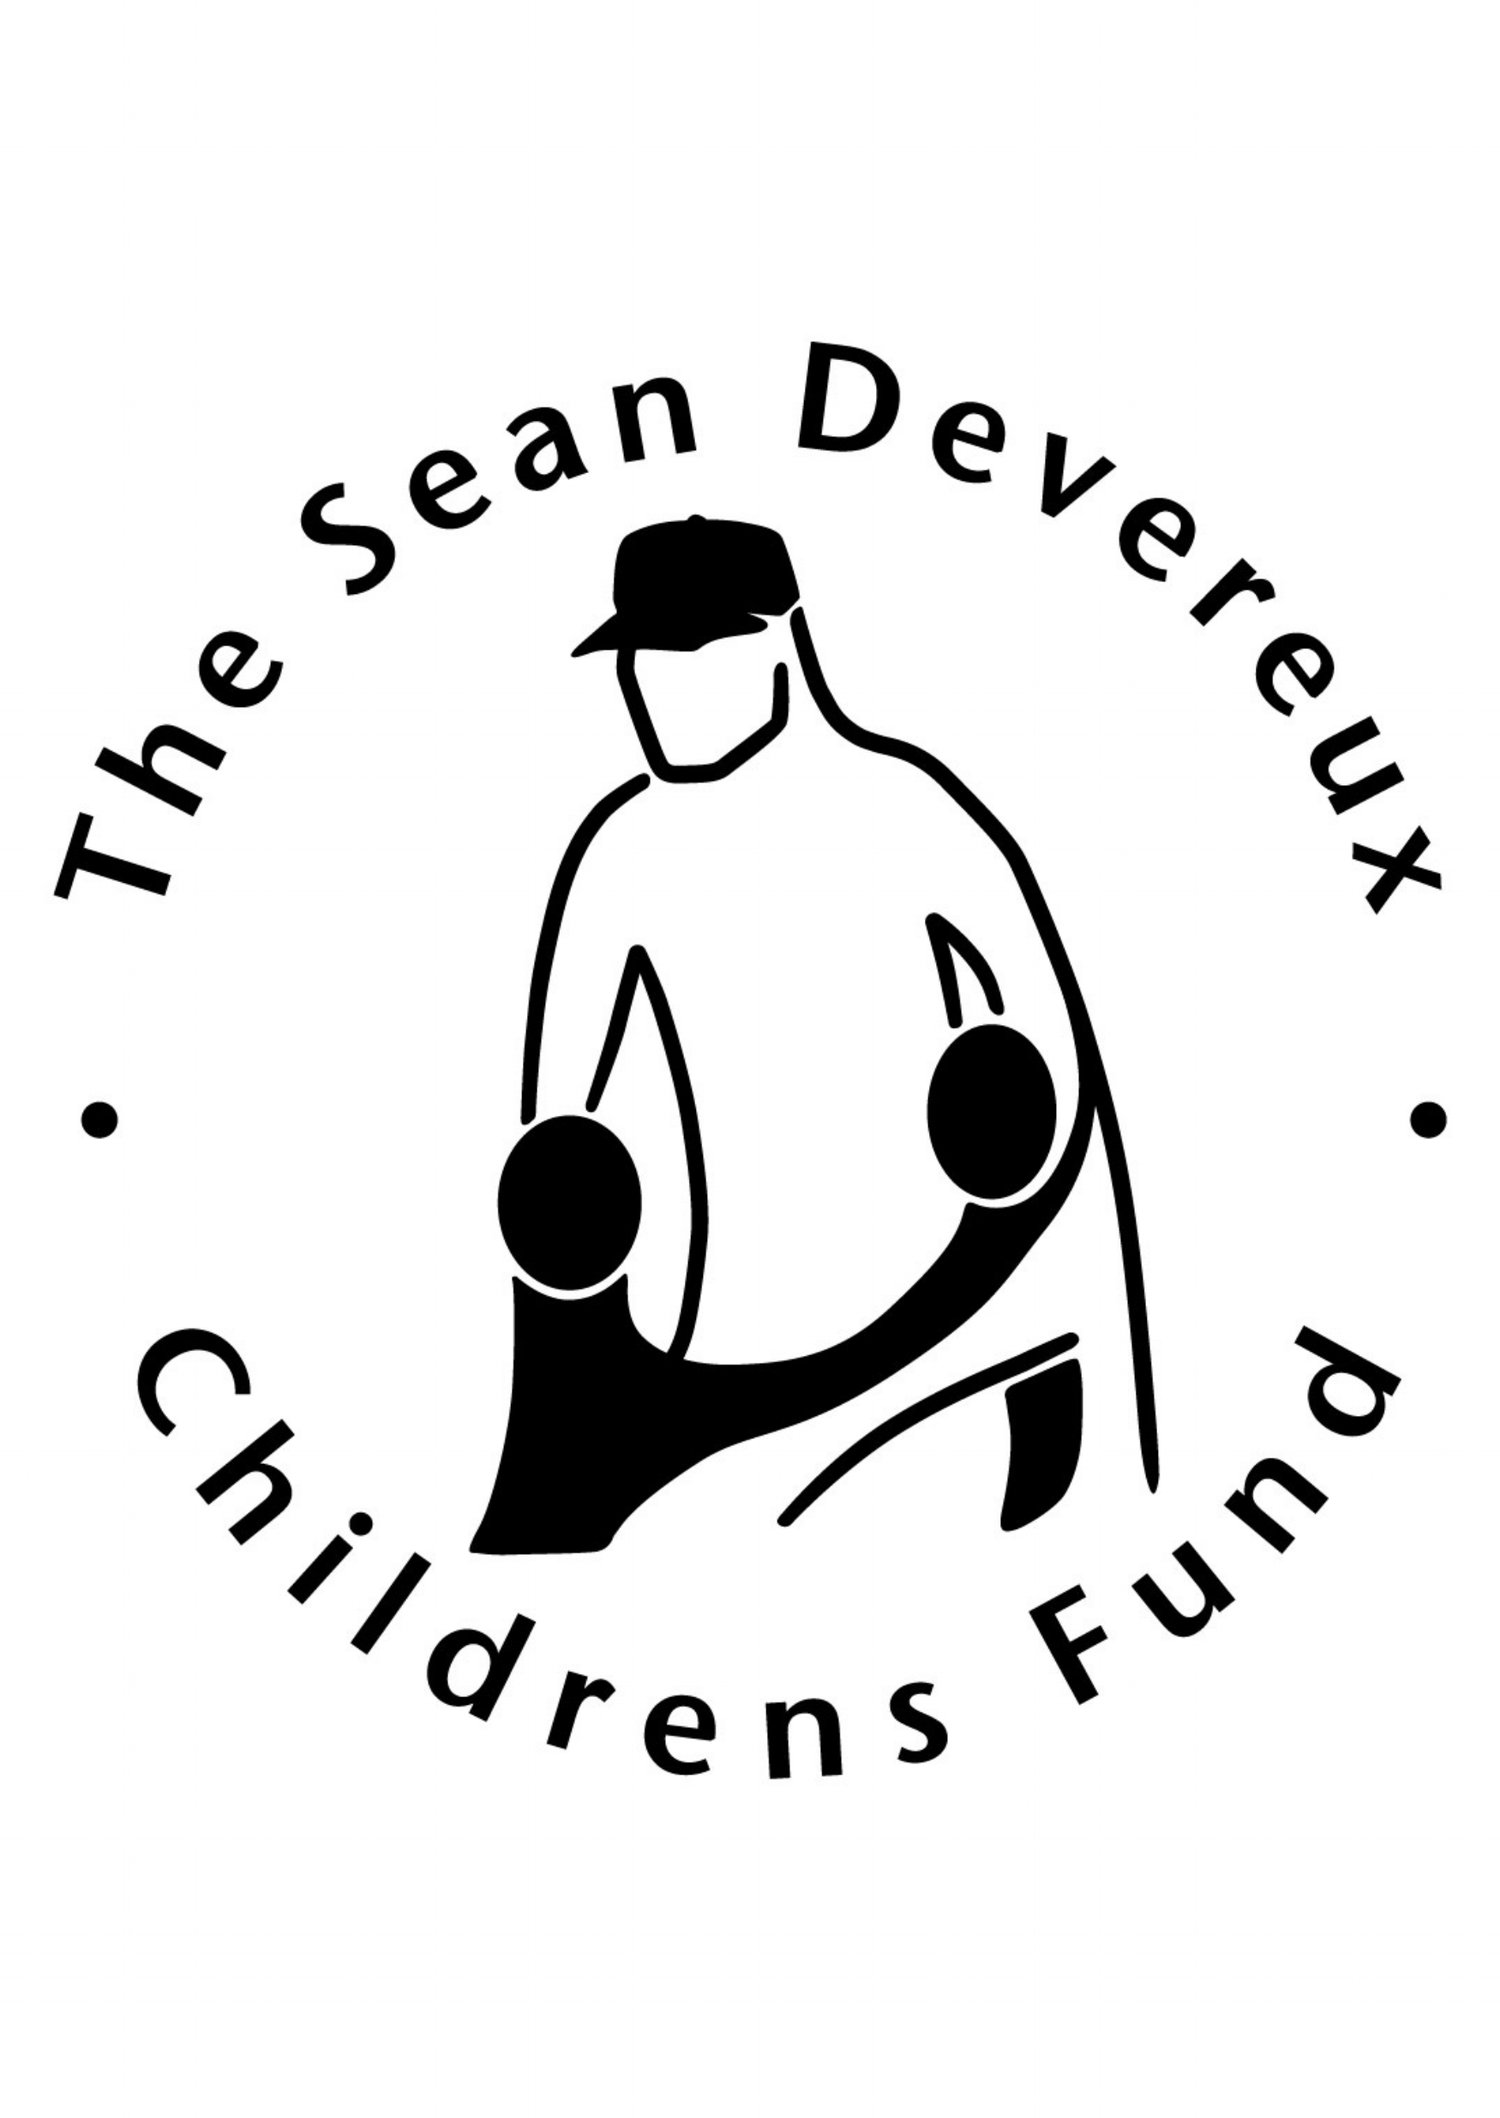 Sean Devereux Children's Fund